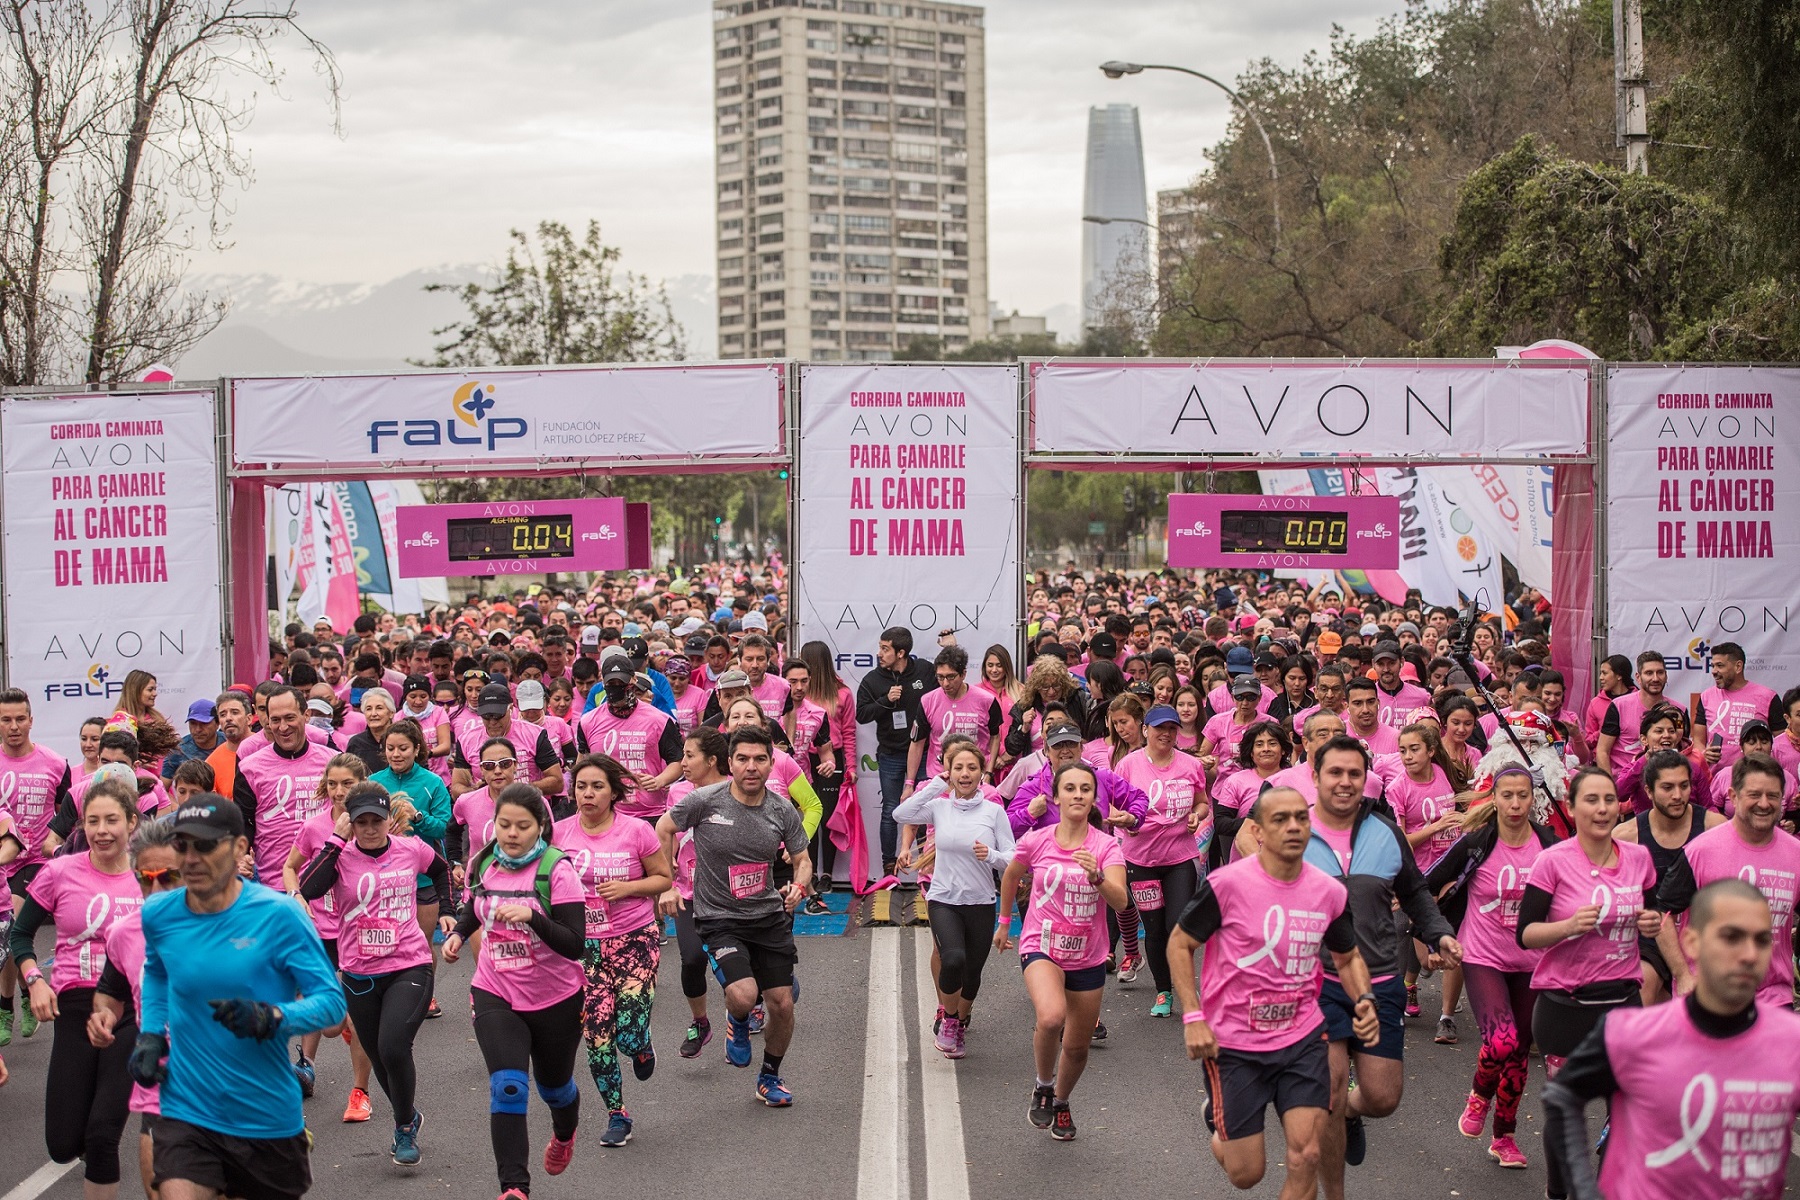  AVON y FALP refuerzan el llamado a correr para ganarle al cáncer de mama